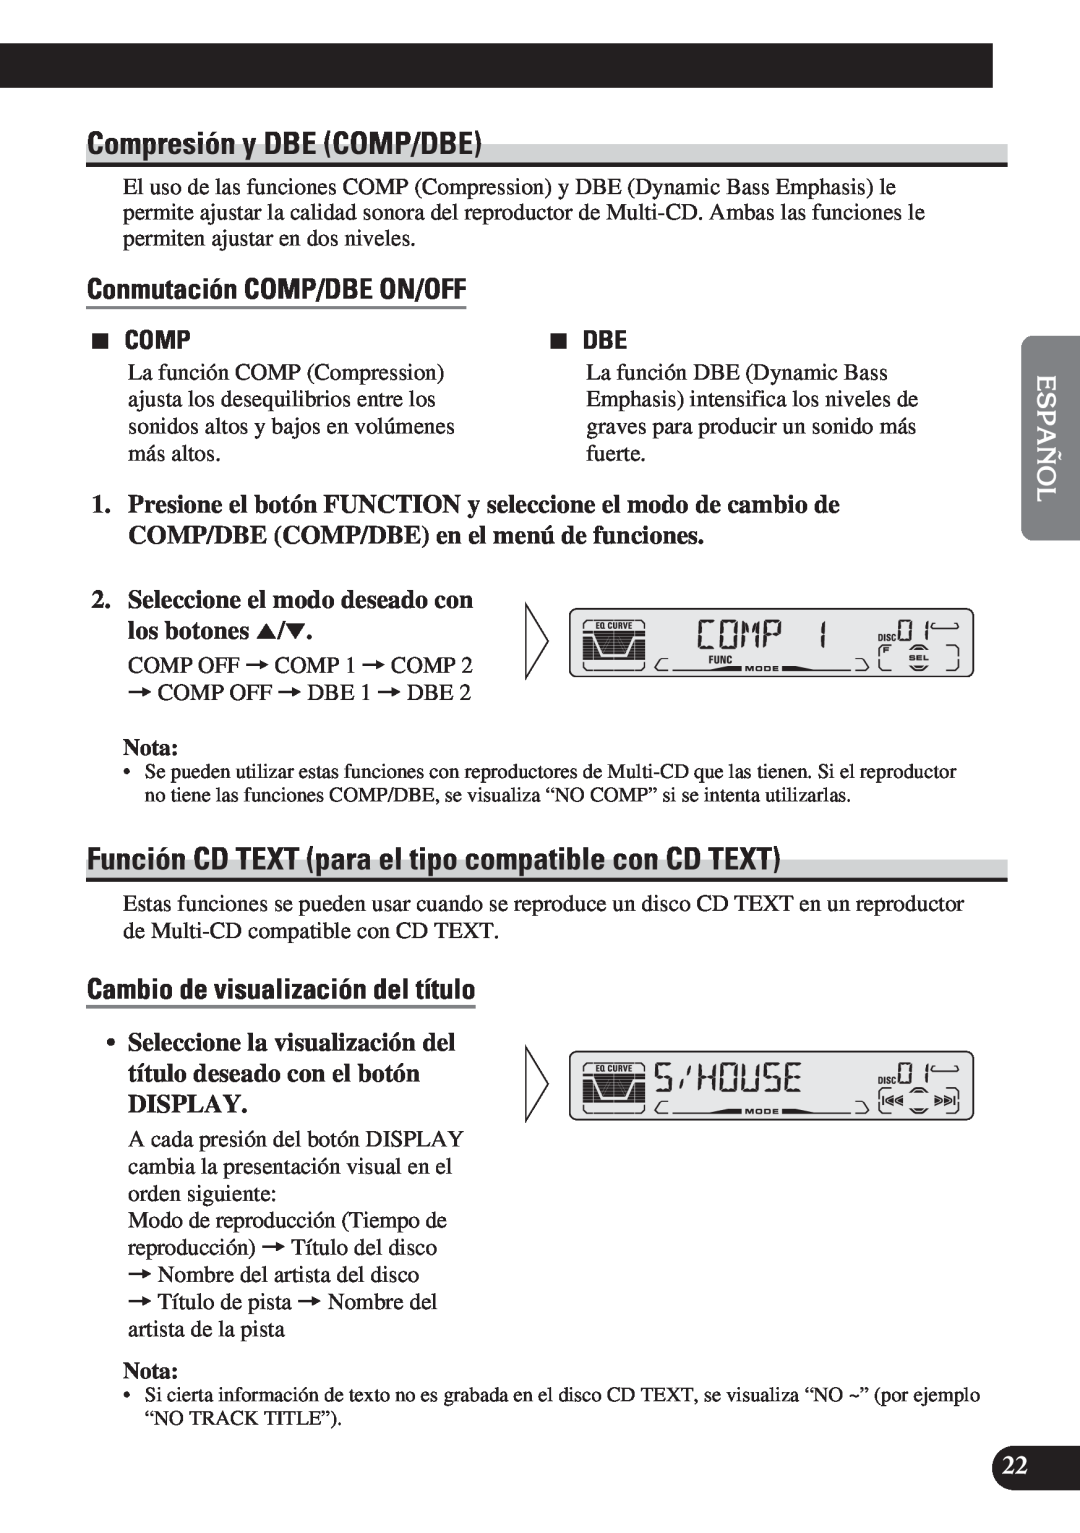 Pioneer DEH-P3150 Compresión y DBE COMP/DBE, Conmutación COMP/DBE ON/OFF, Cambio de visualización del título, Display 